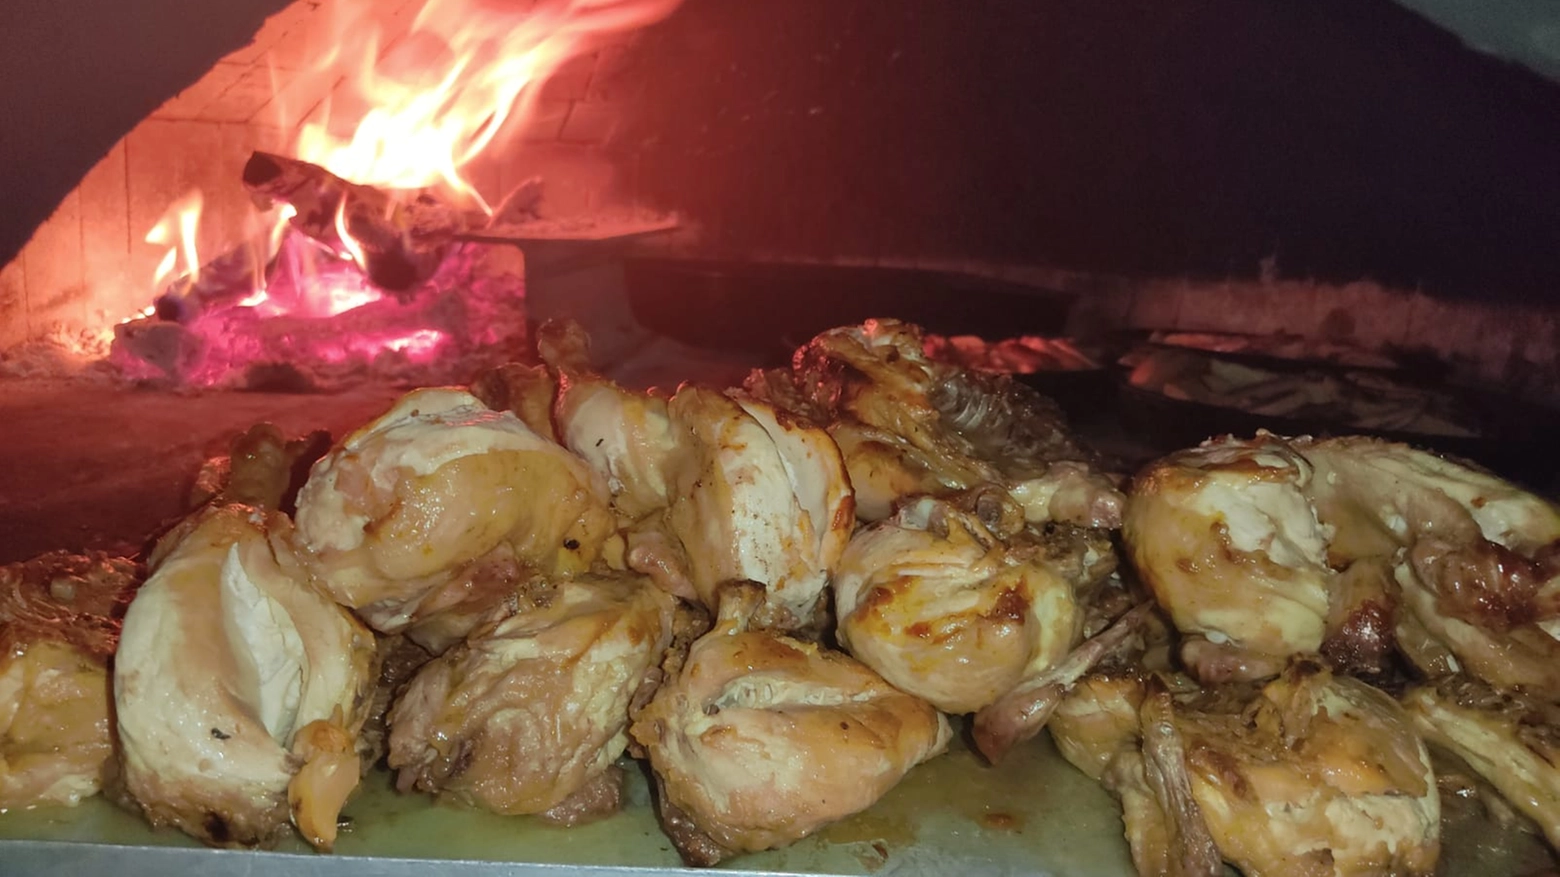 Sapori mediterranei, cucina calabrese, polli ruspanti e pizze tutto cotto in forno a legna, vi aspettano “Da Rino Pizza e Pollo”